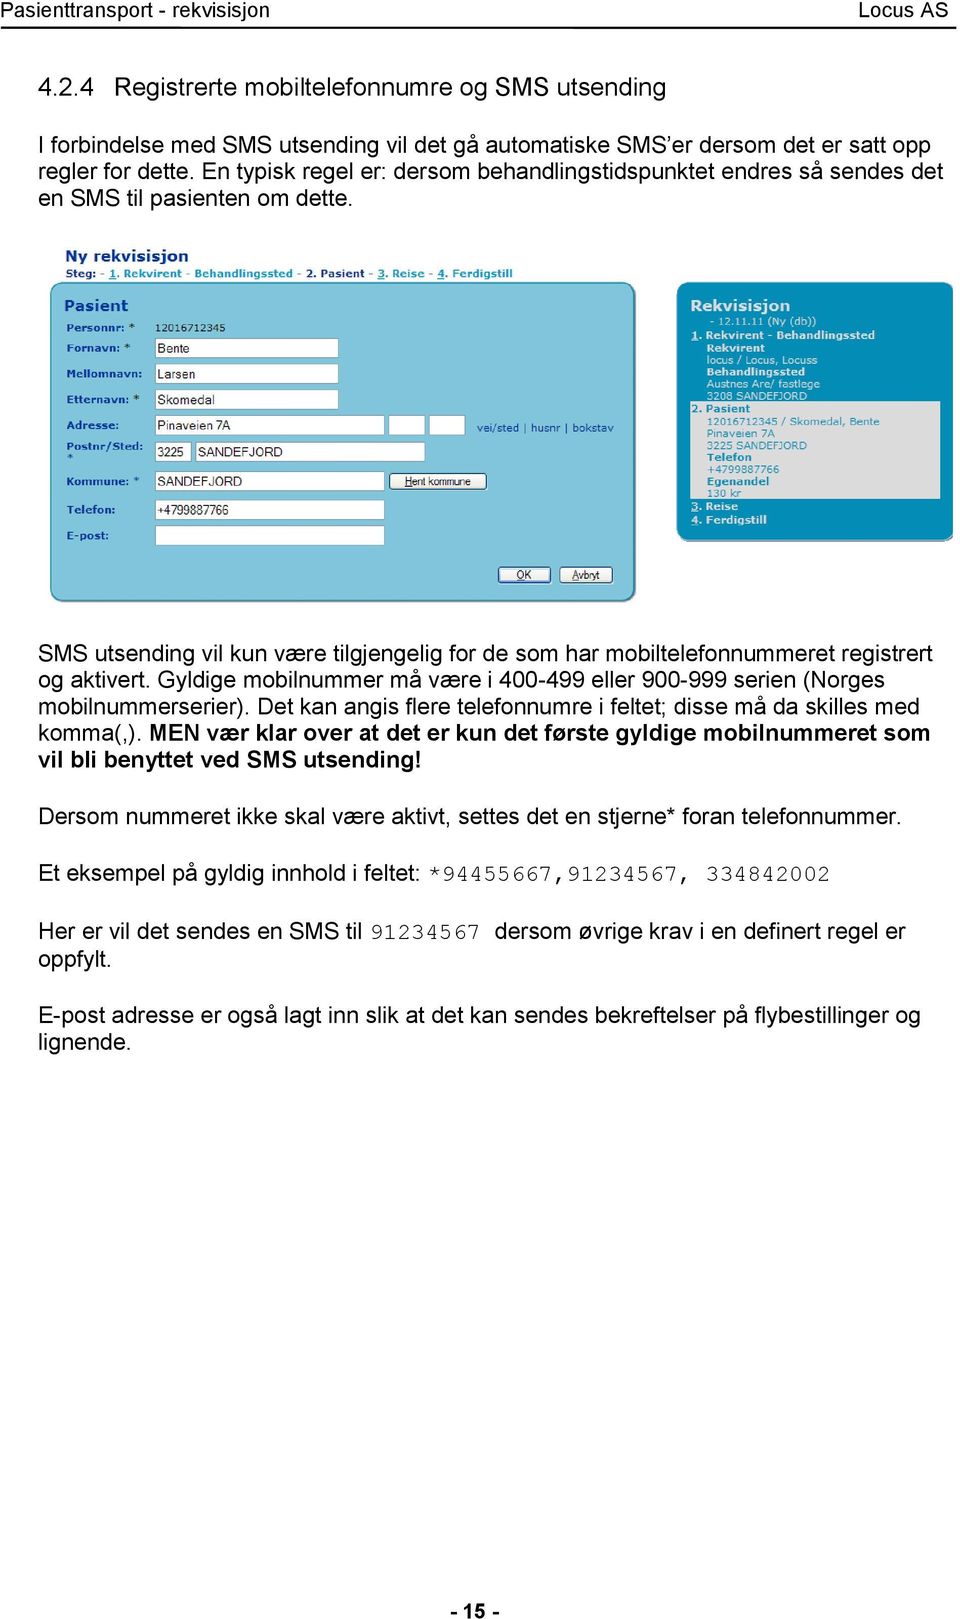 SMS utsending vil kun være tilgjengelig for de som har mobiltelefonnummeret registrert og aktivert. Gyldige mobilnummer må være i 400-499 eller 900-999 serien (Norges mobilnummerserier).